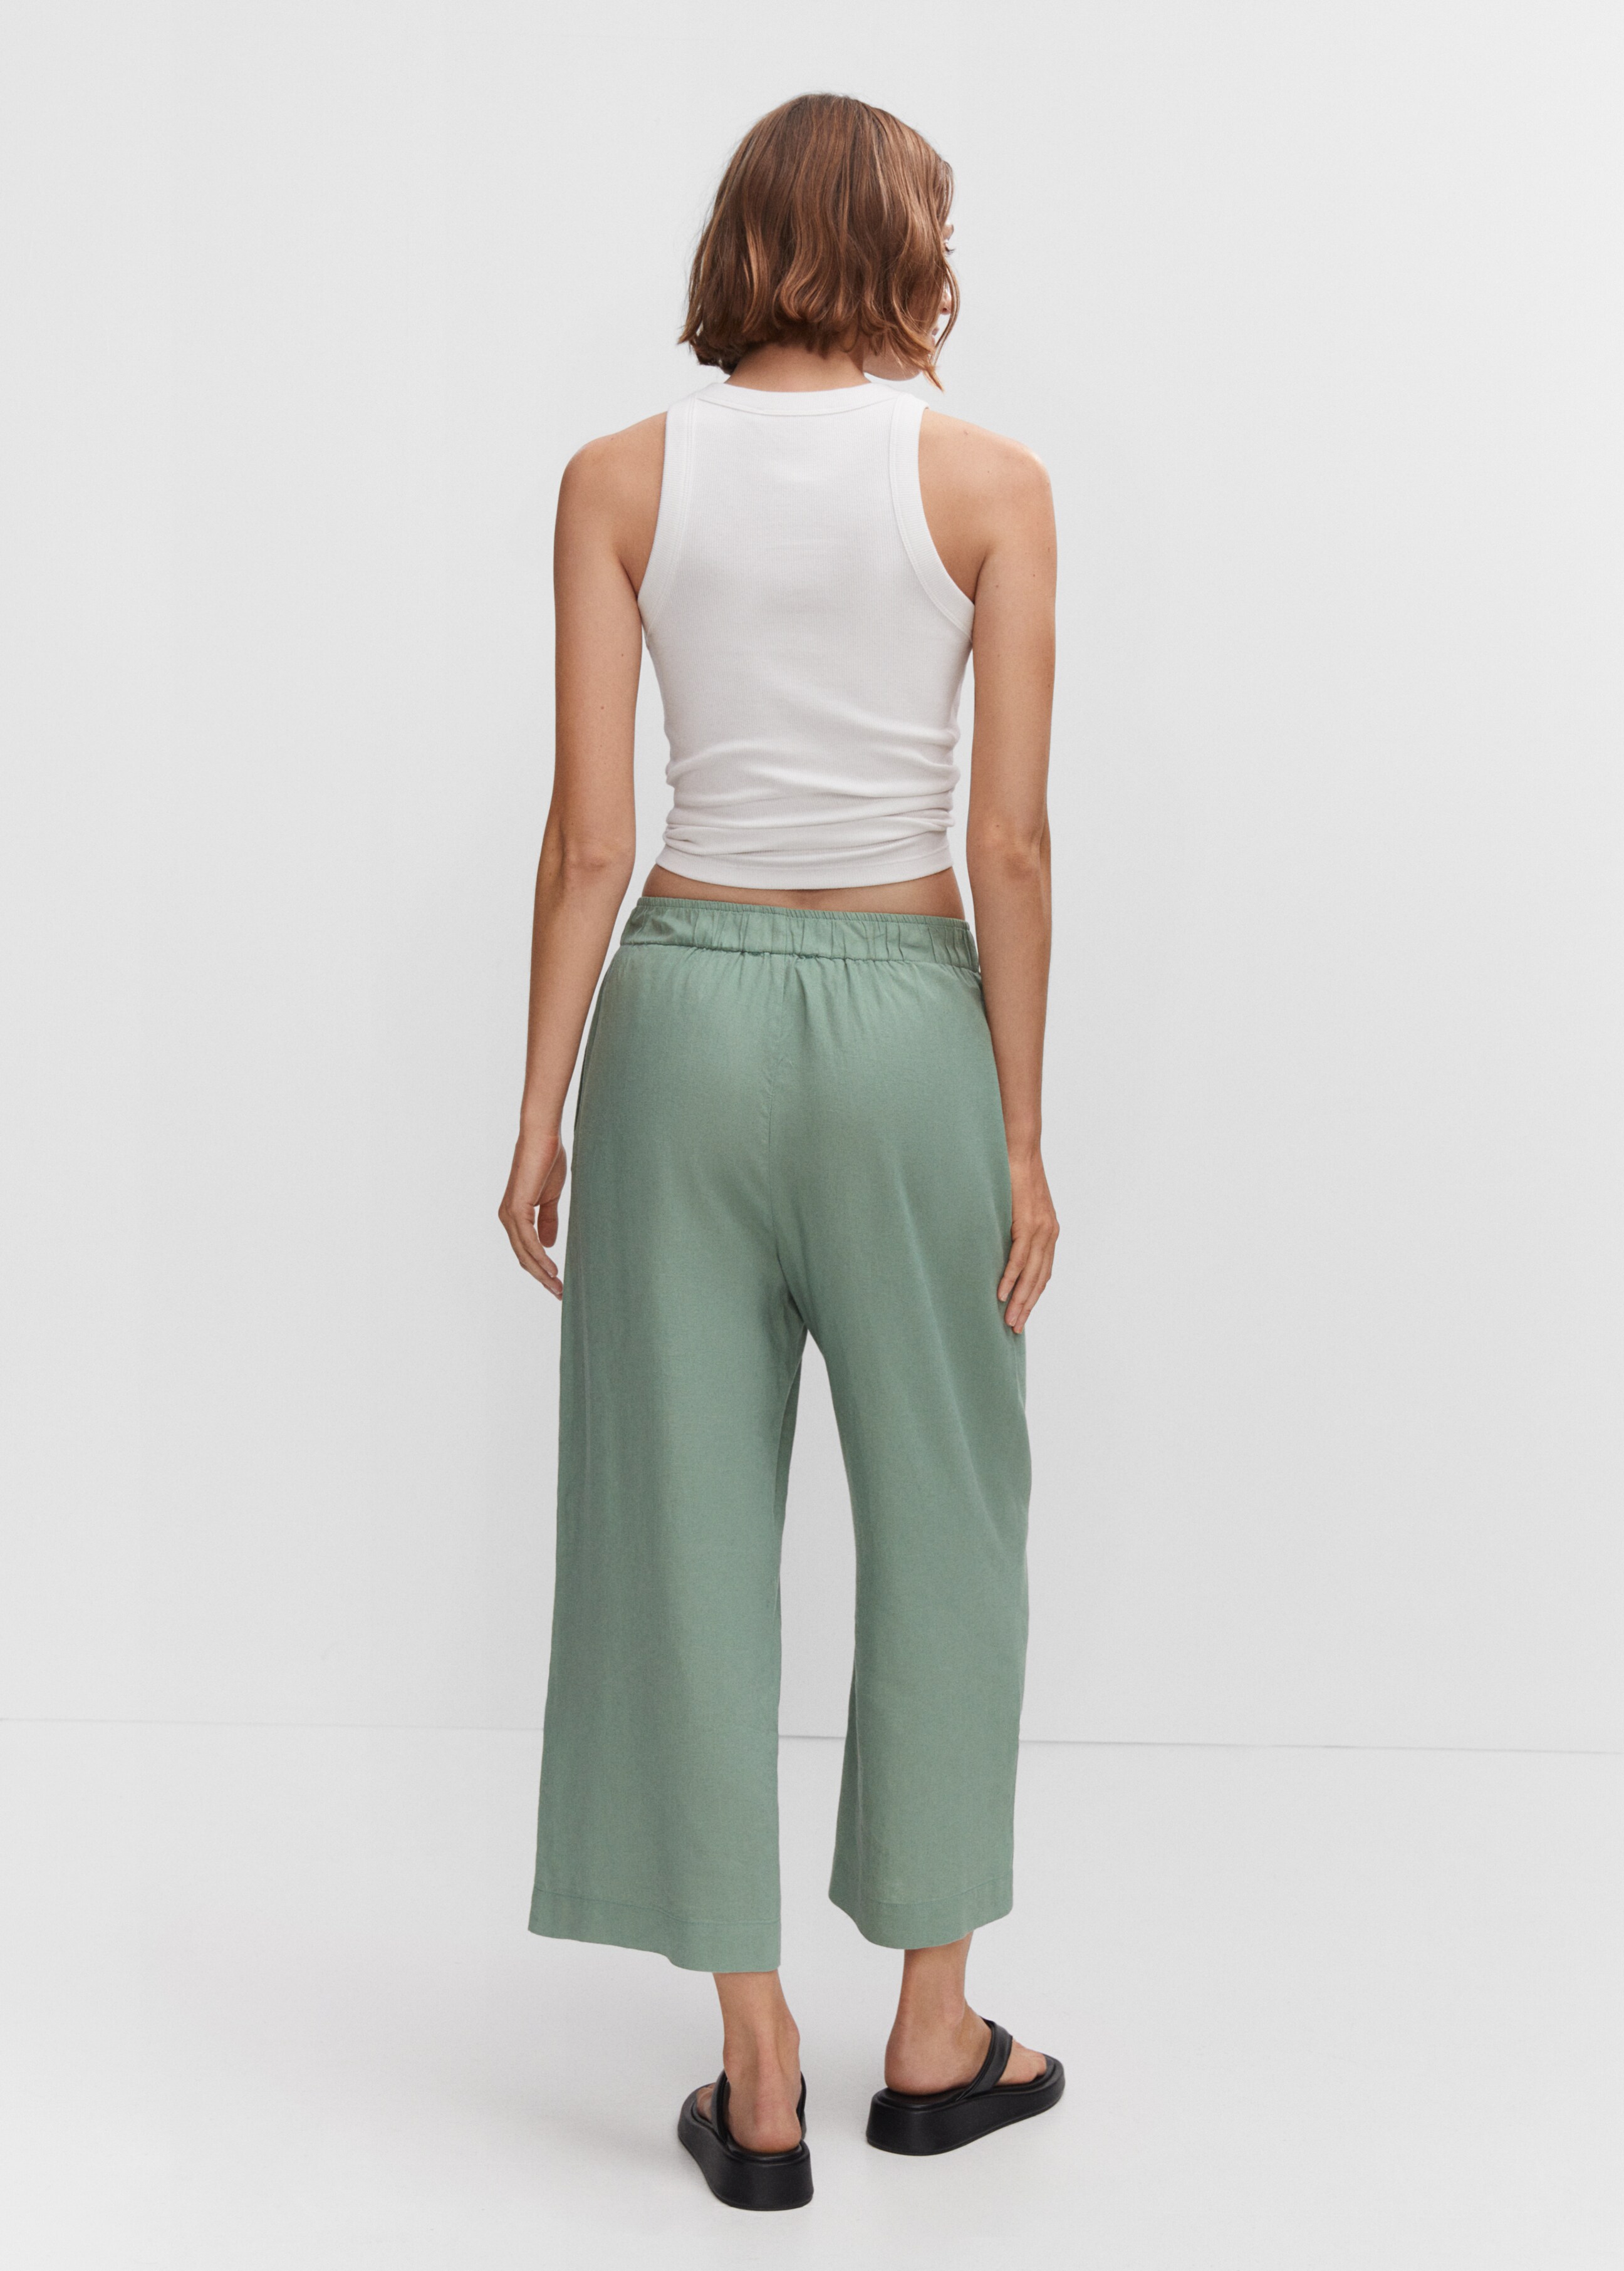 Pantalón culotte lino - Reverso del artículo